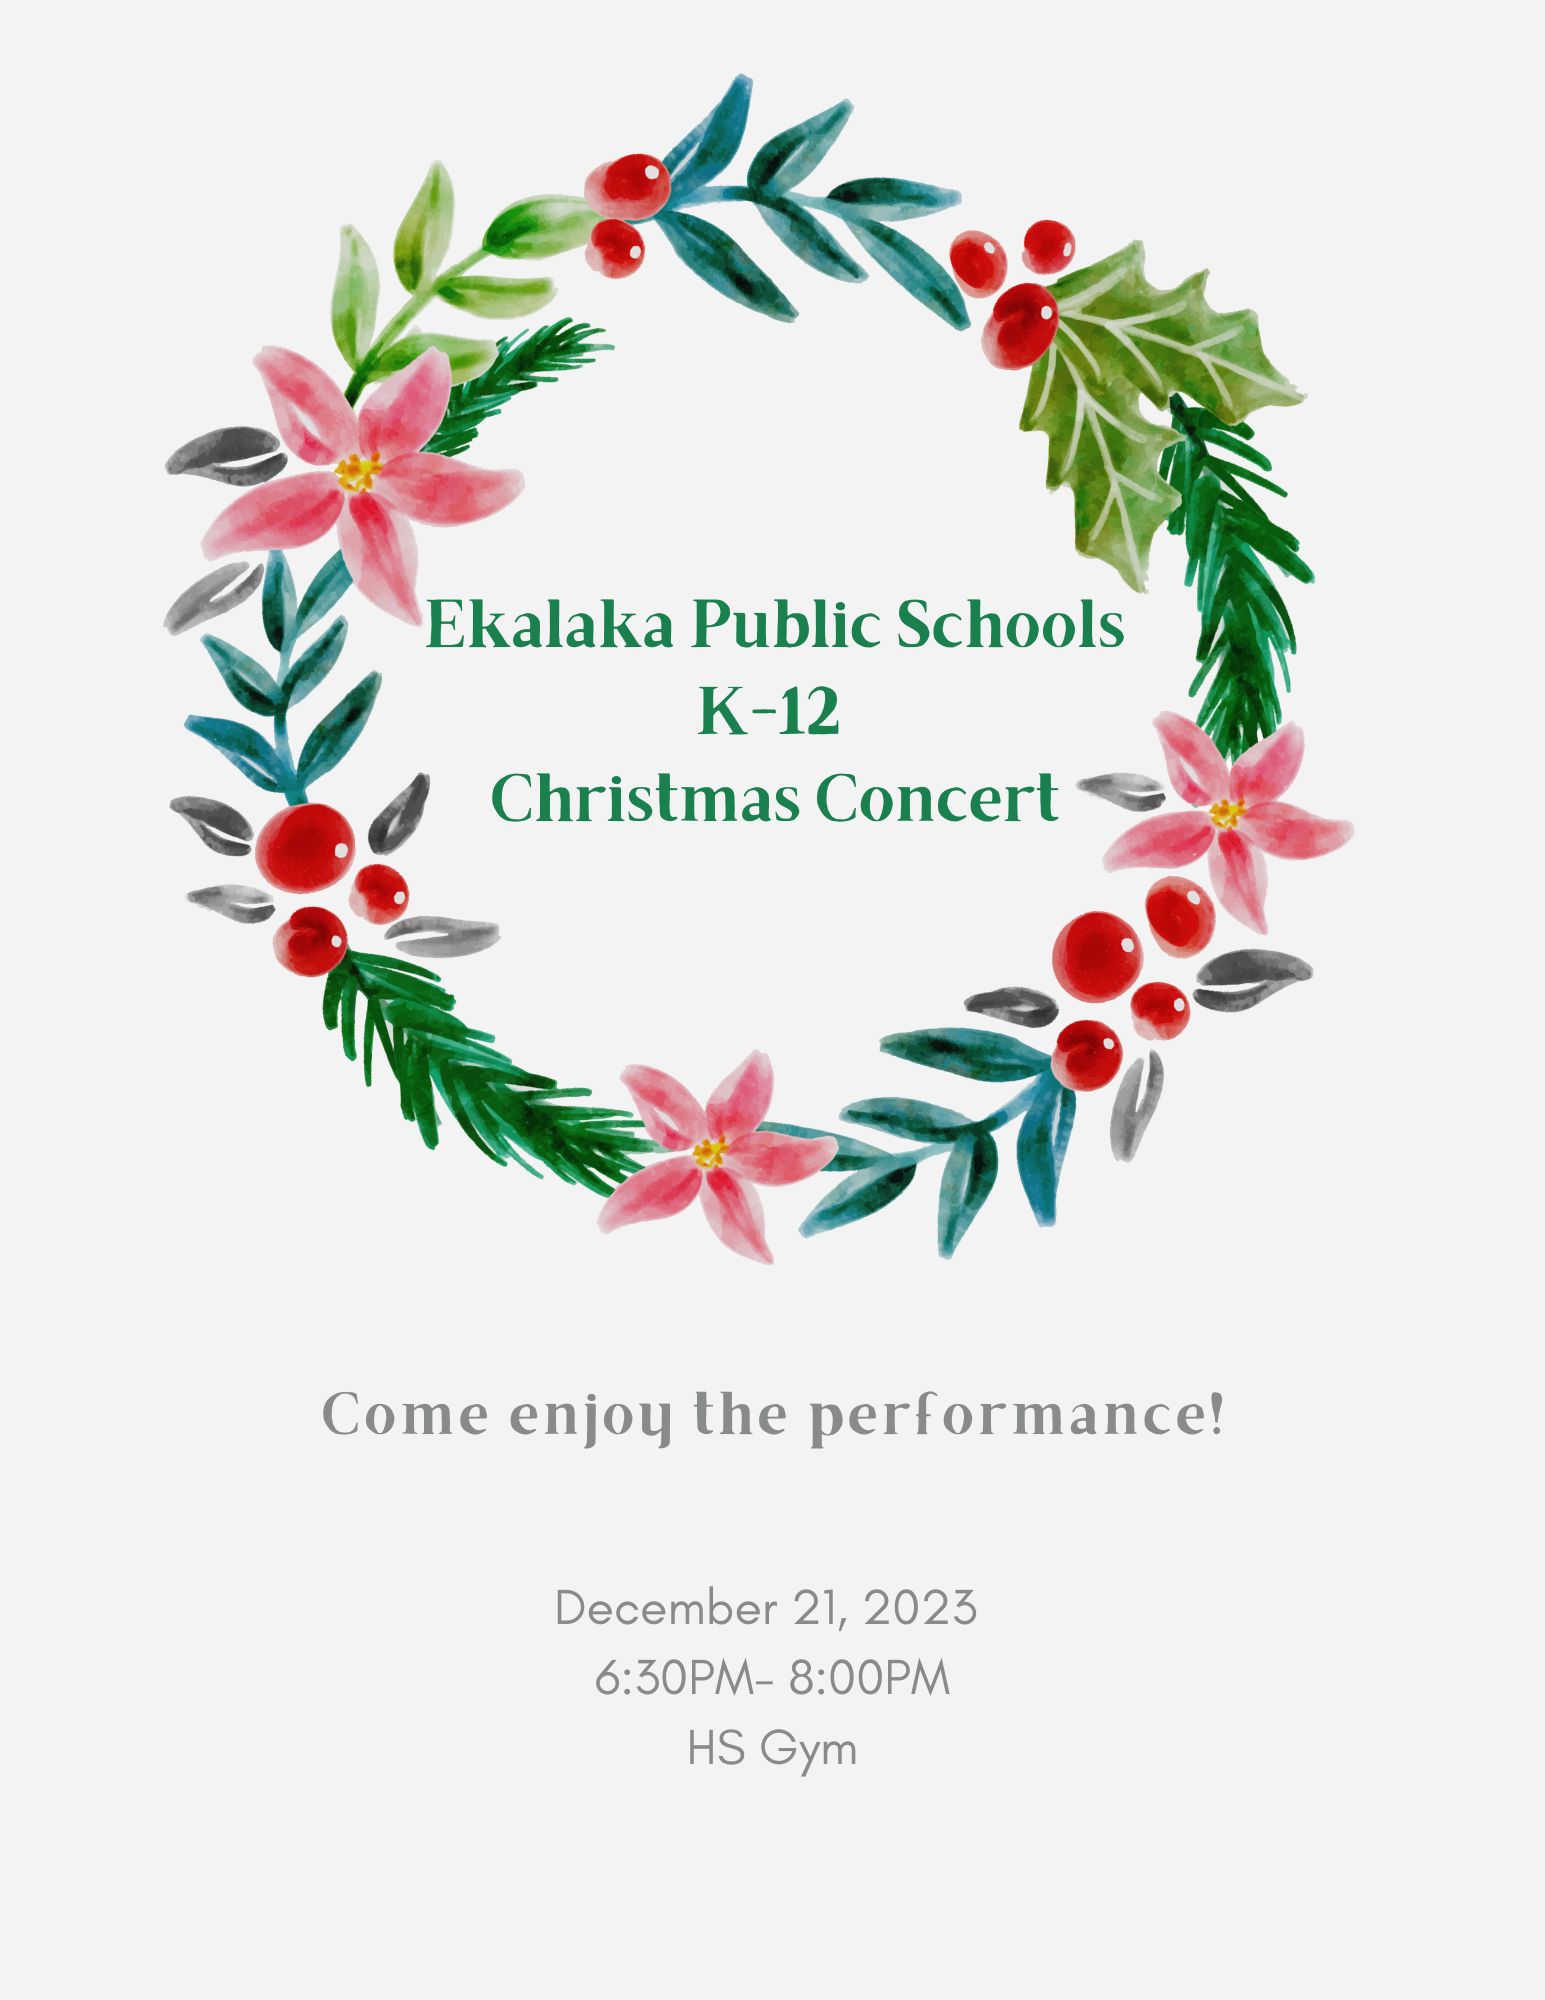 Ekalaka Public Schools K-12 Christmas Concert Performance. December 21st